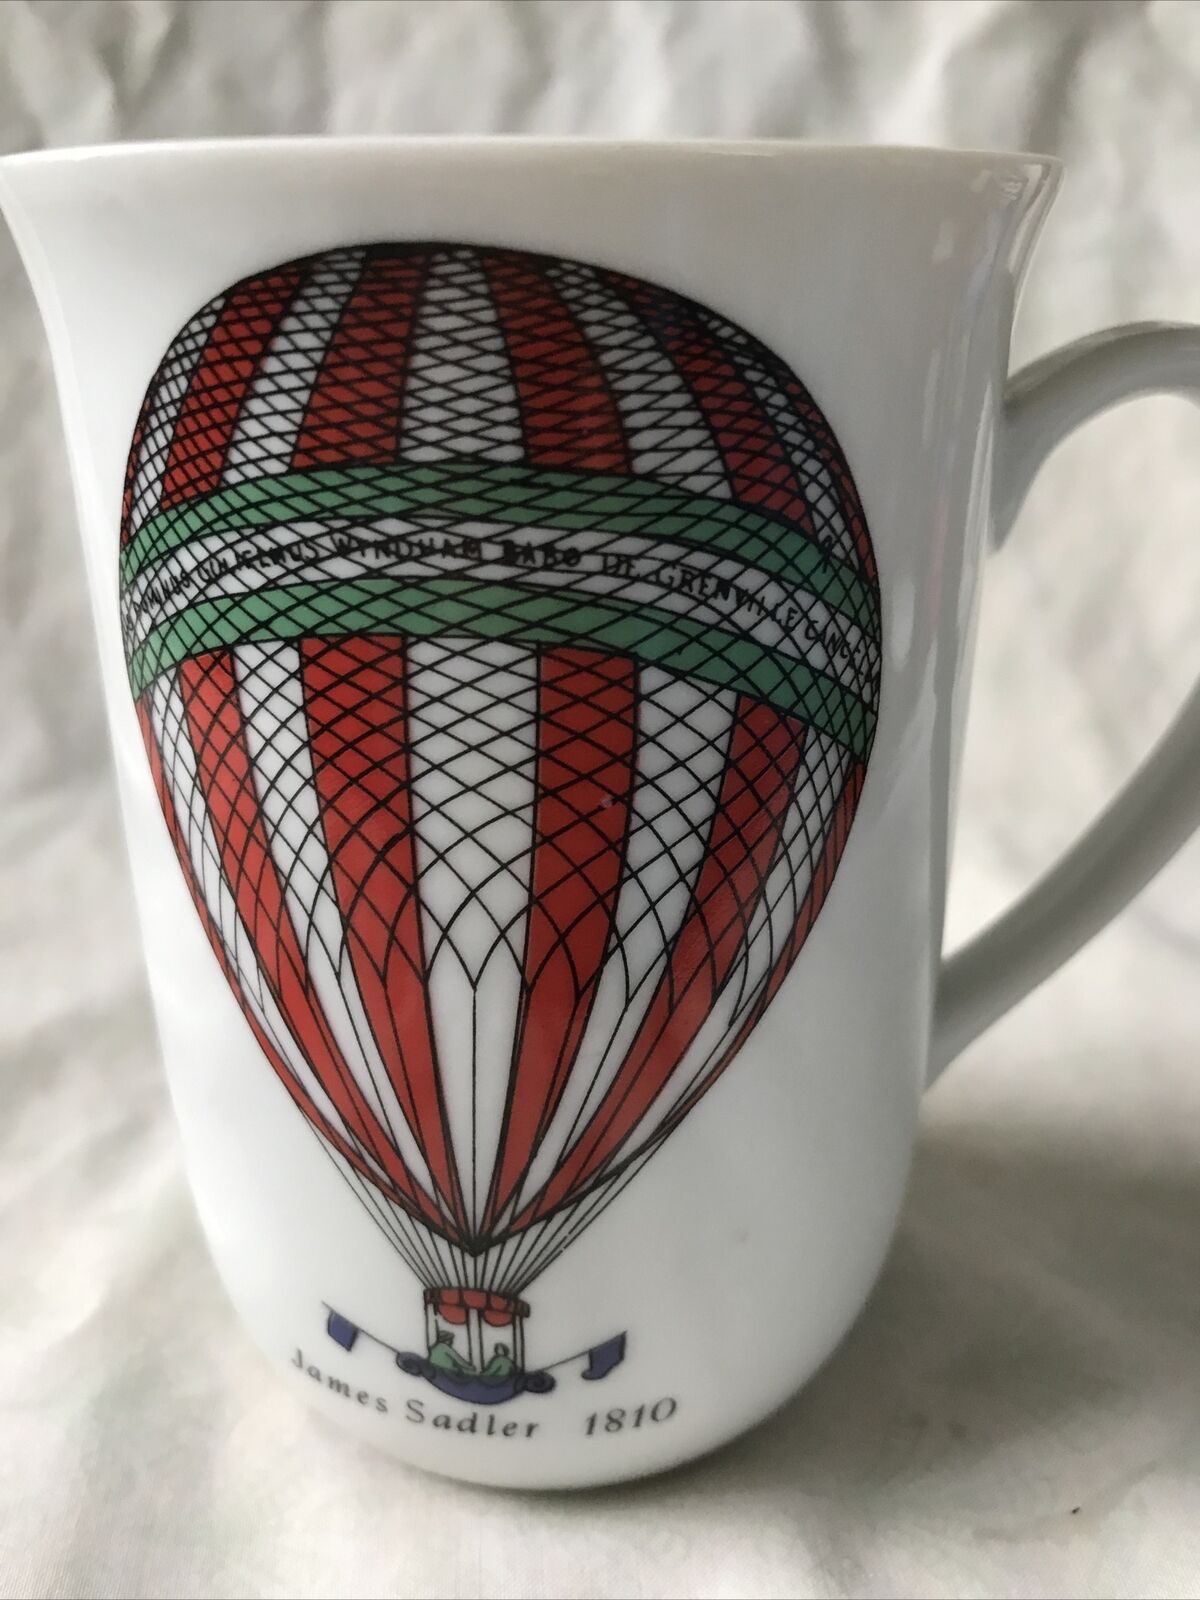 Steam punk James Sadler Hot Air Balloon ceramic Coffee Cup Mug